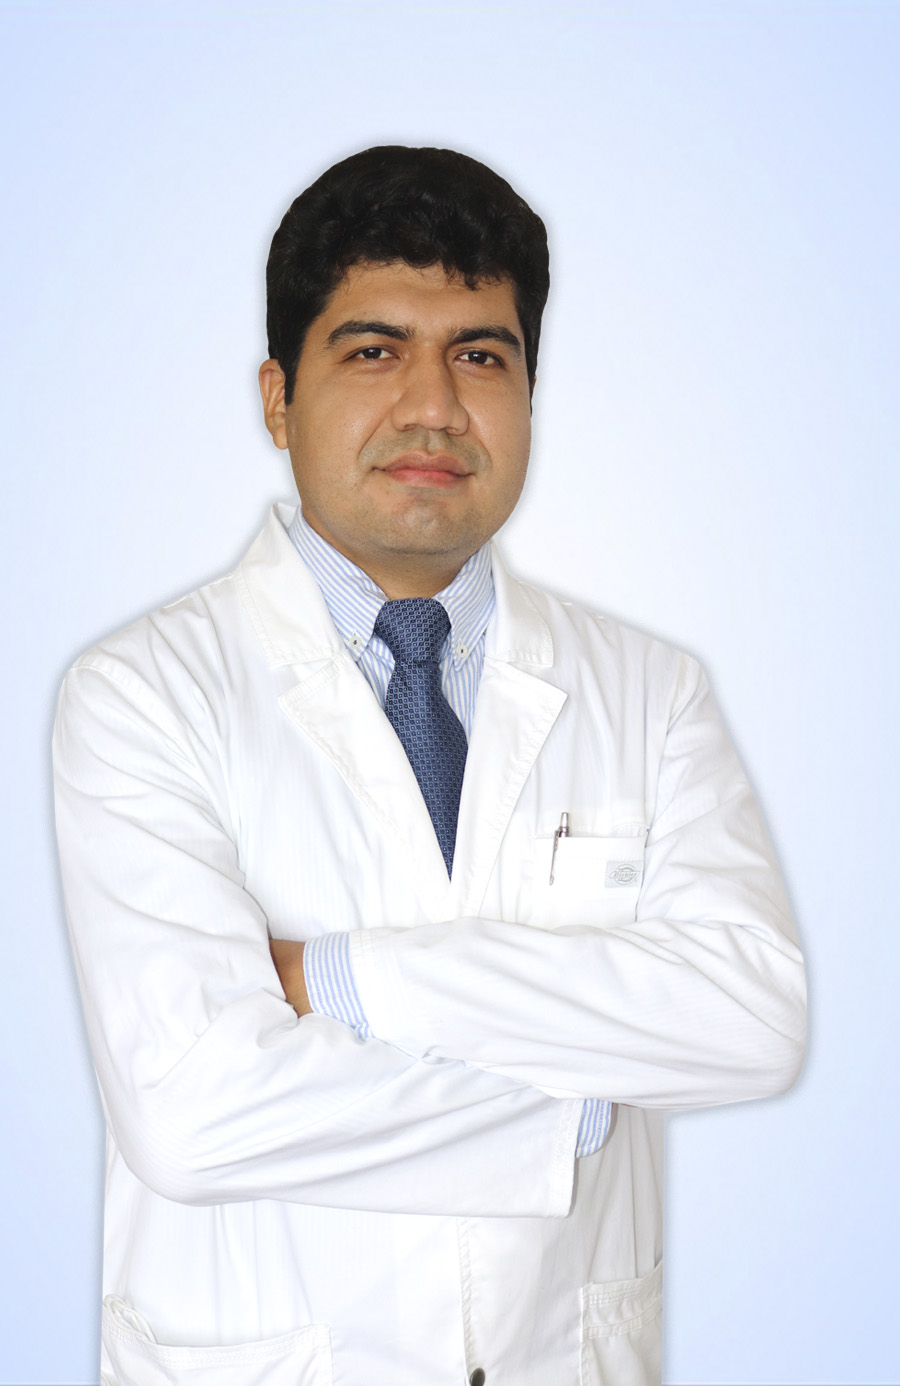 DR. CHUMACERO SANCHEZ